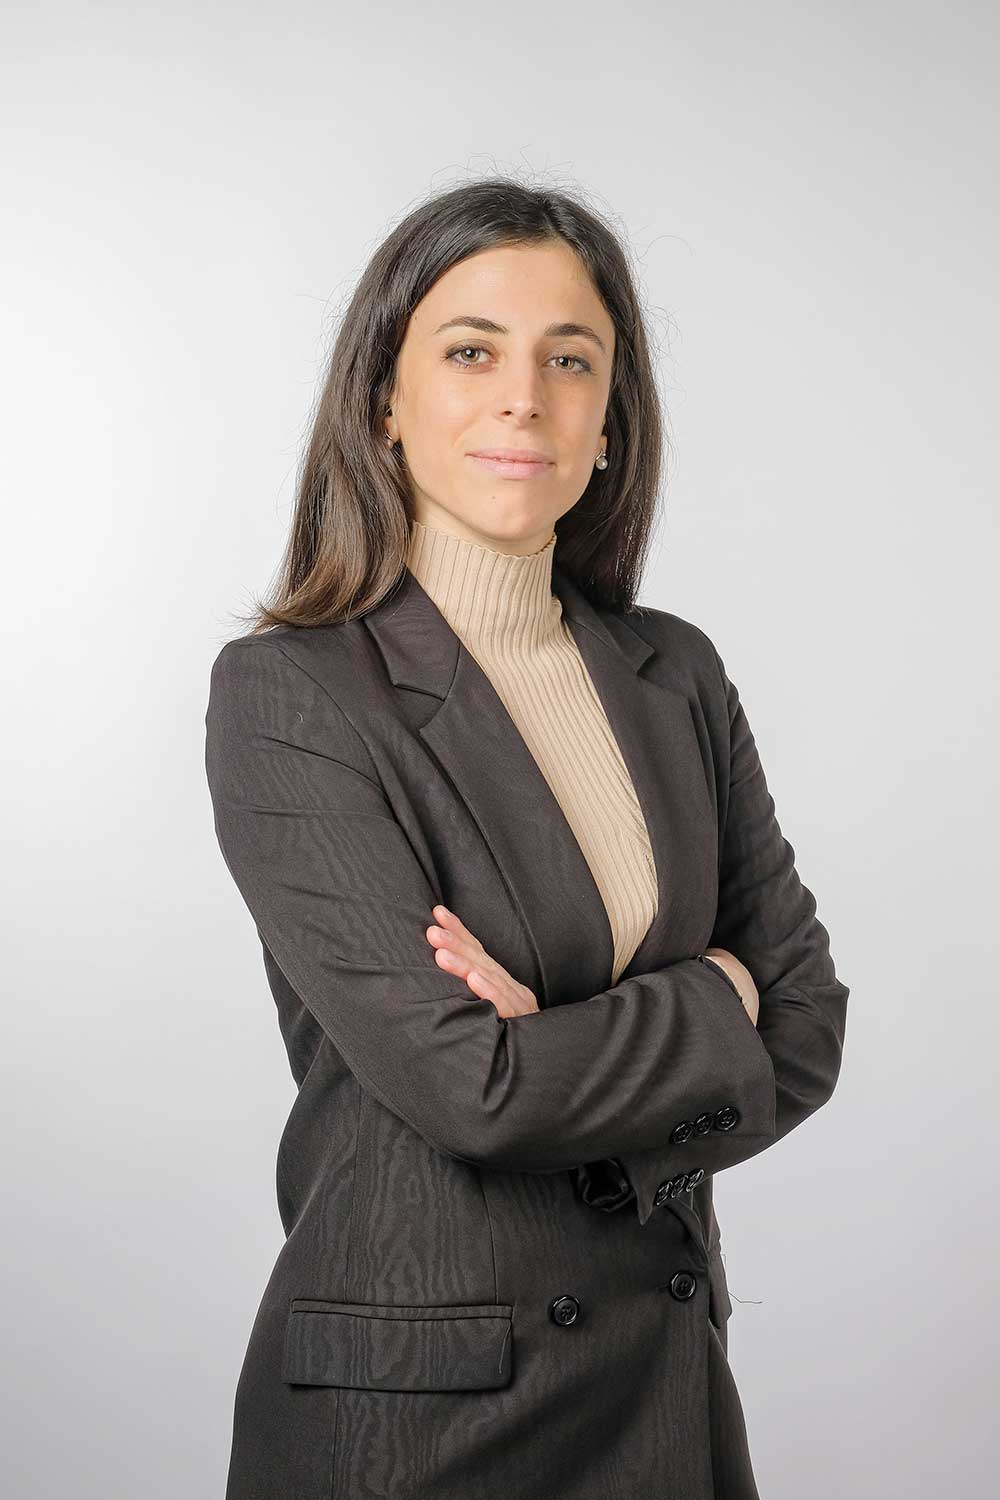 Avvocato Laura Bartolomeo